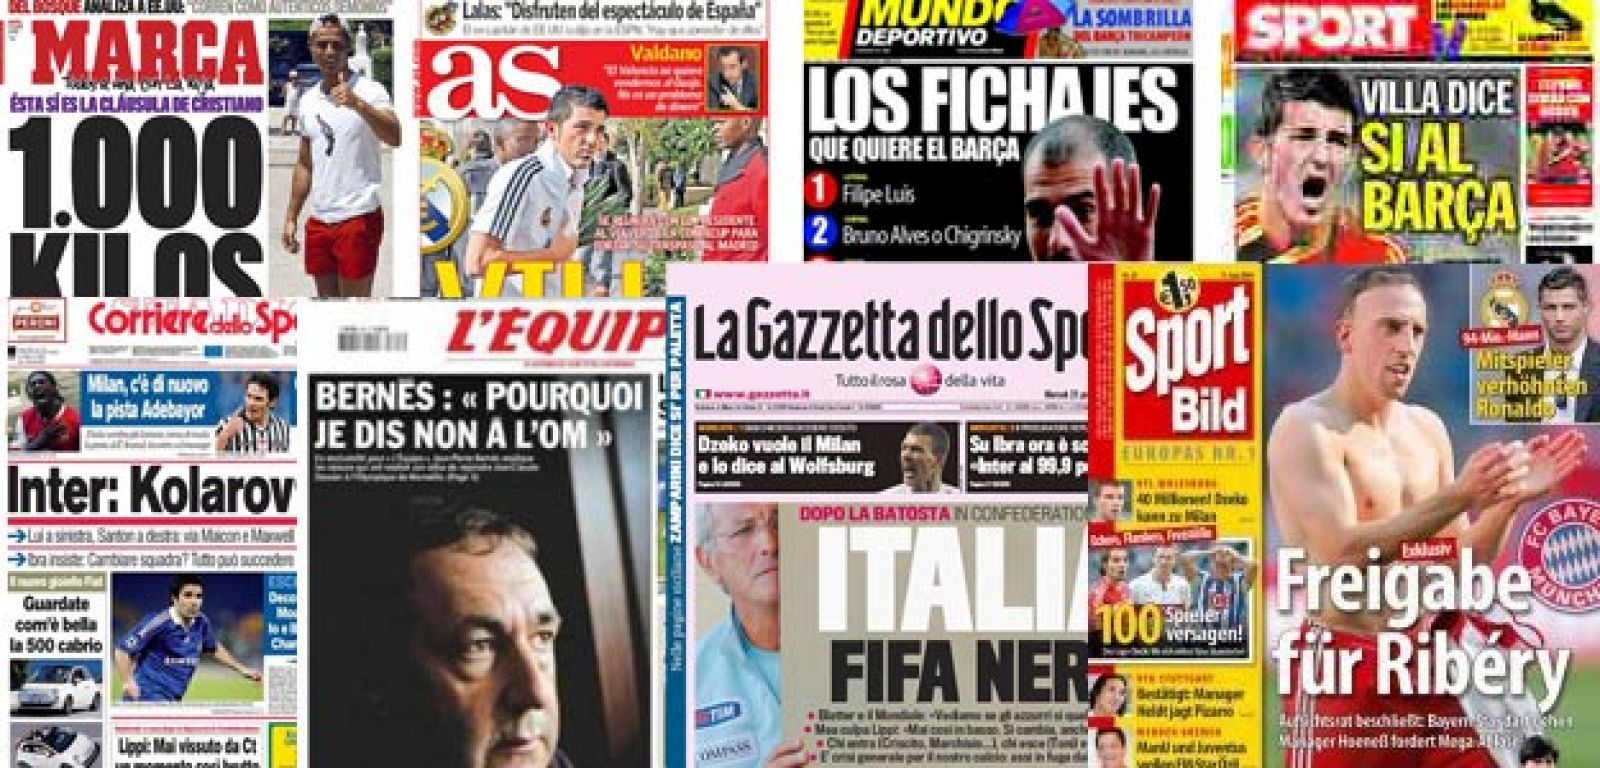 Las portadas de los diarios deportivos españoles y europeos destacan las especulaciones sobre fichajes.